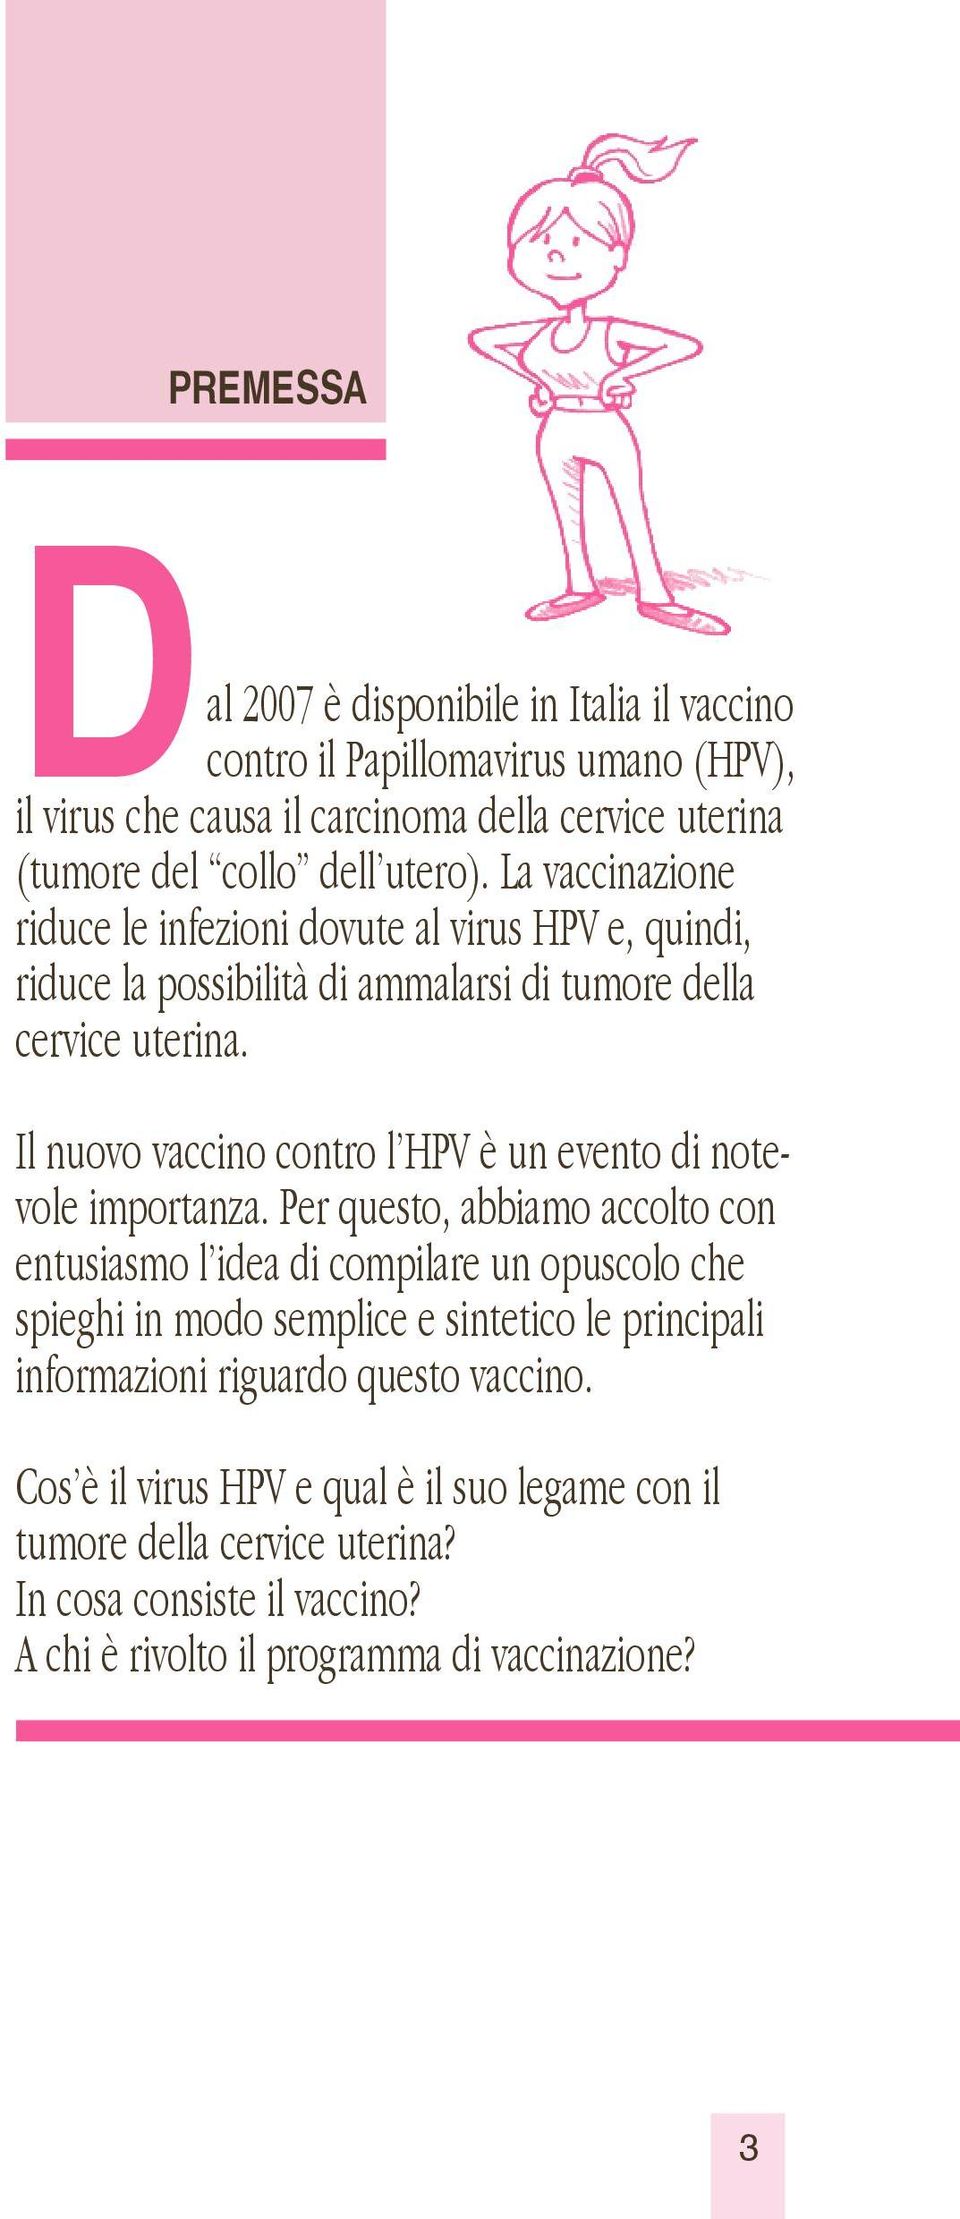 Il nuovo vaccino contro l HPV è un evento di notevole importanza.